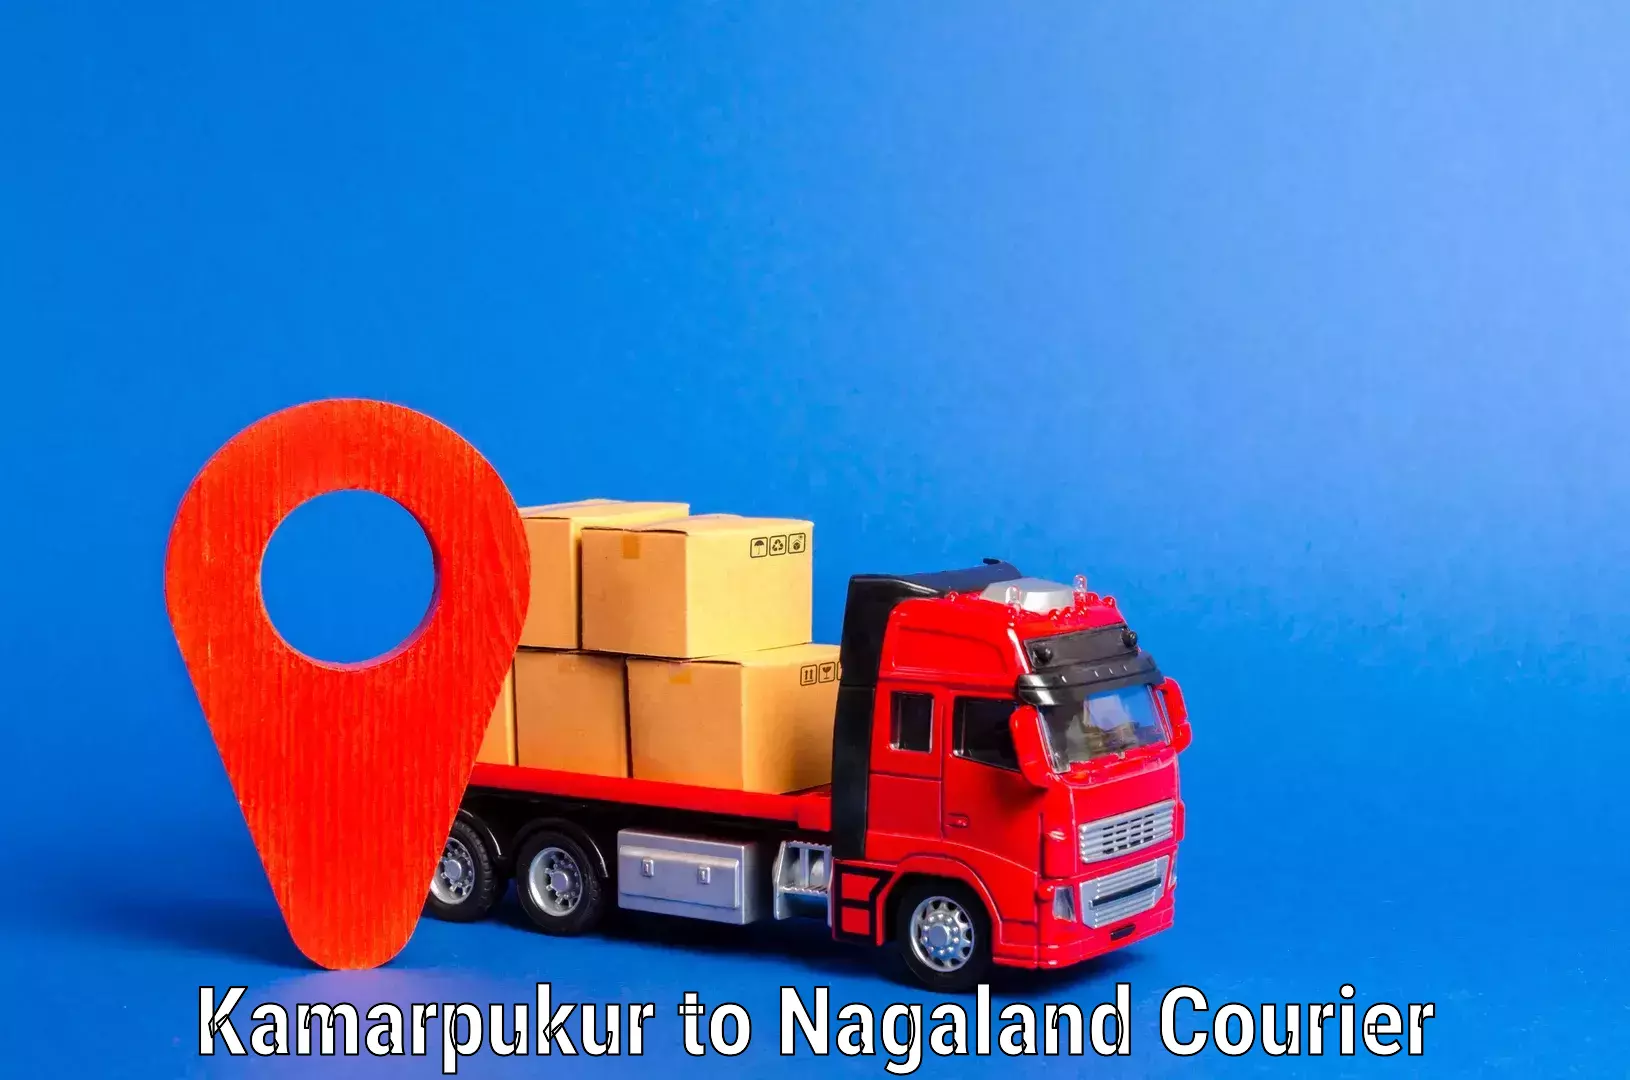 Furniture relocation experts Kamarpukur to Nagaland